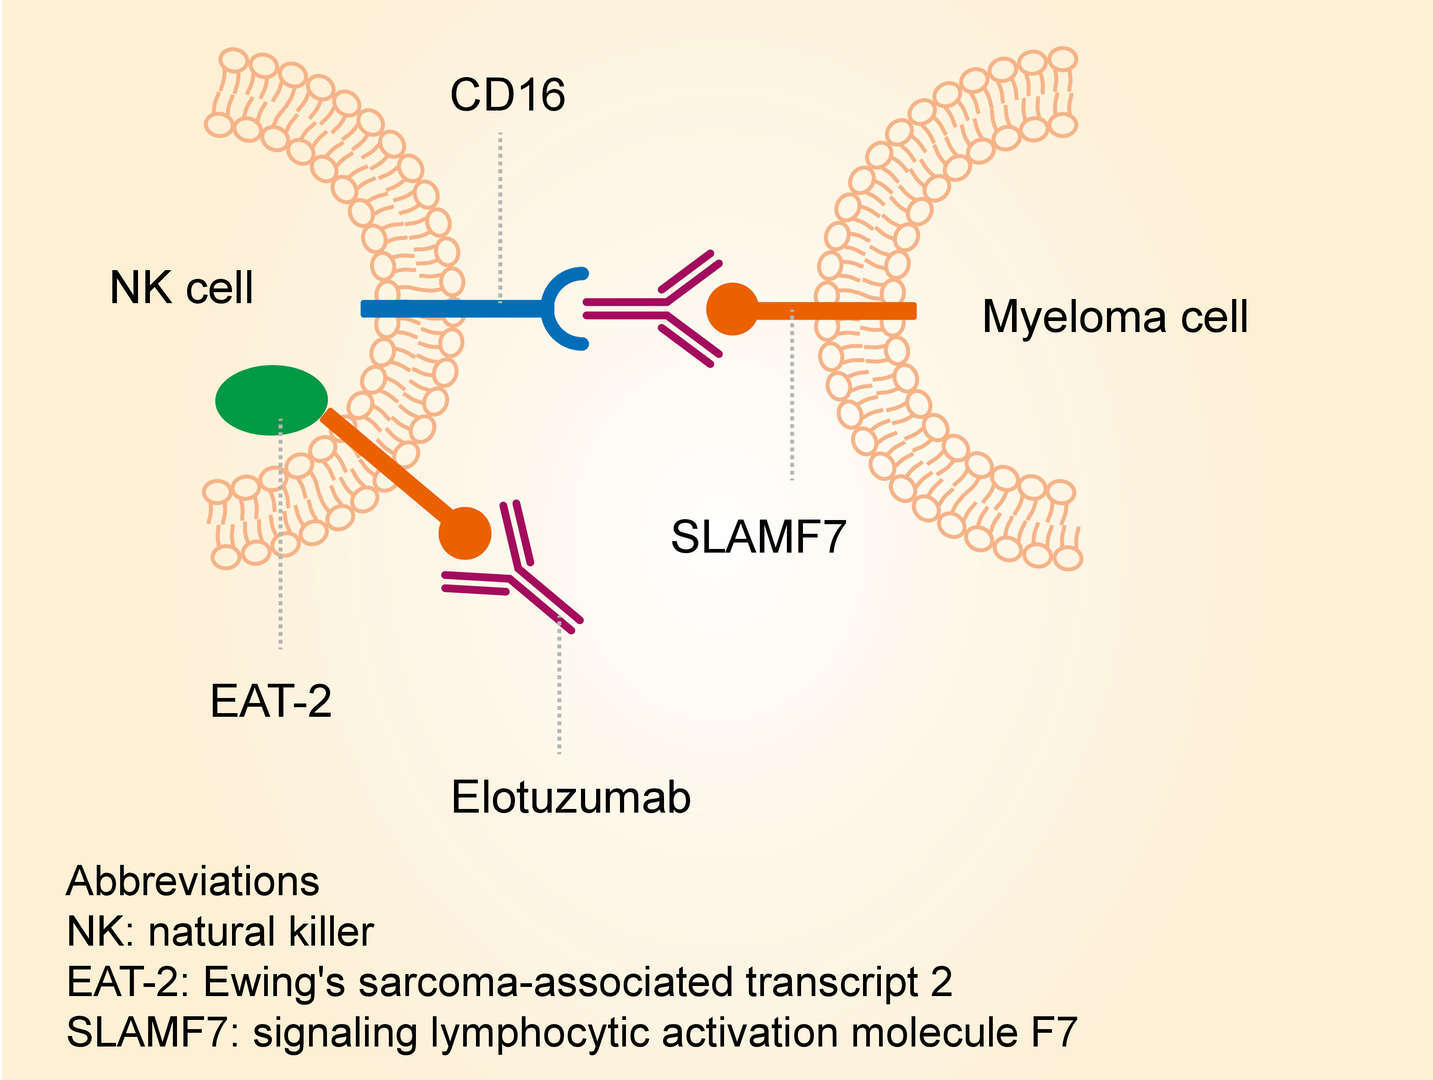 Mechanism of action of elotuzumab